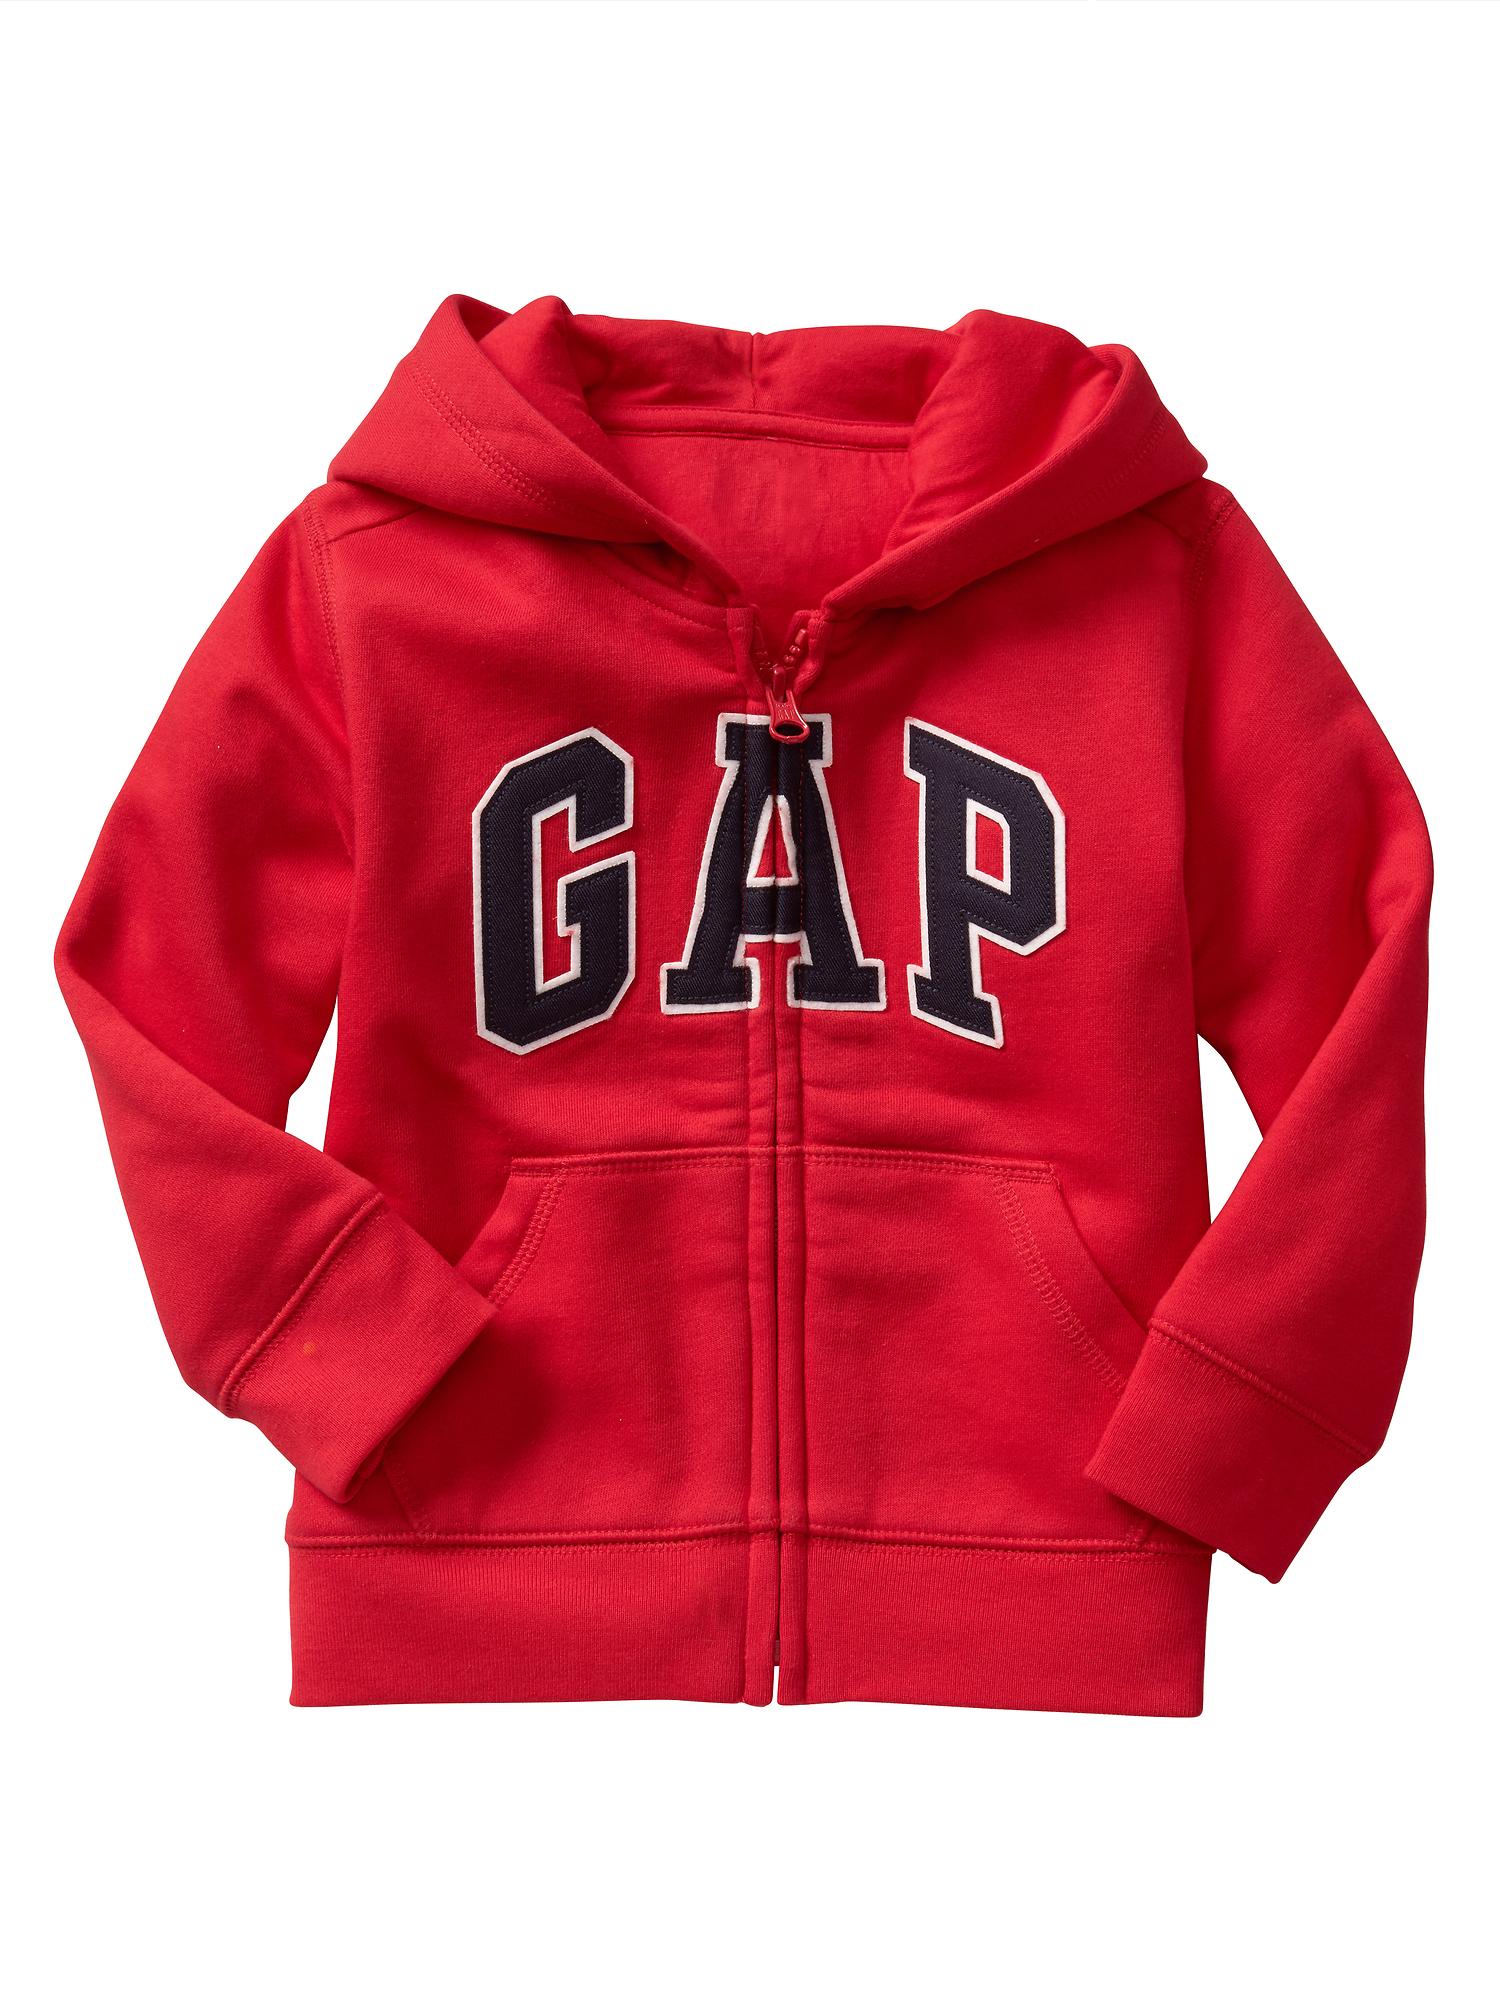 red zip hoodie toddler